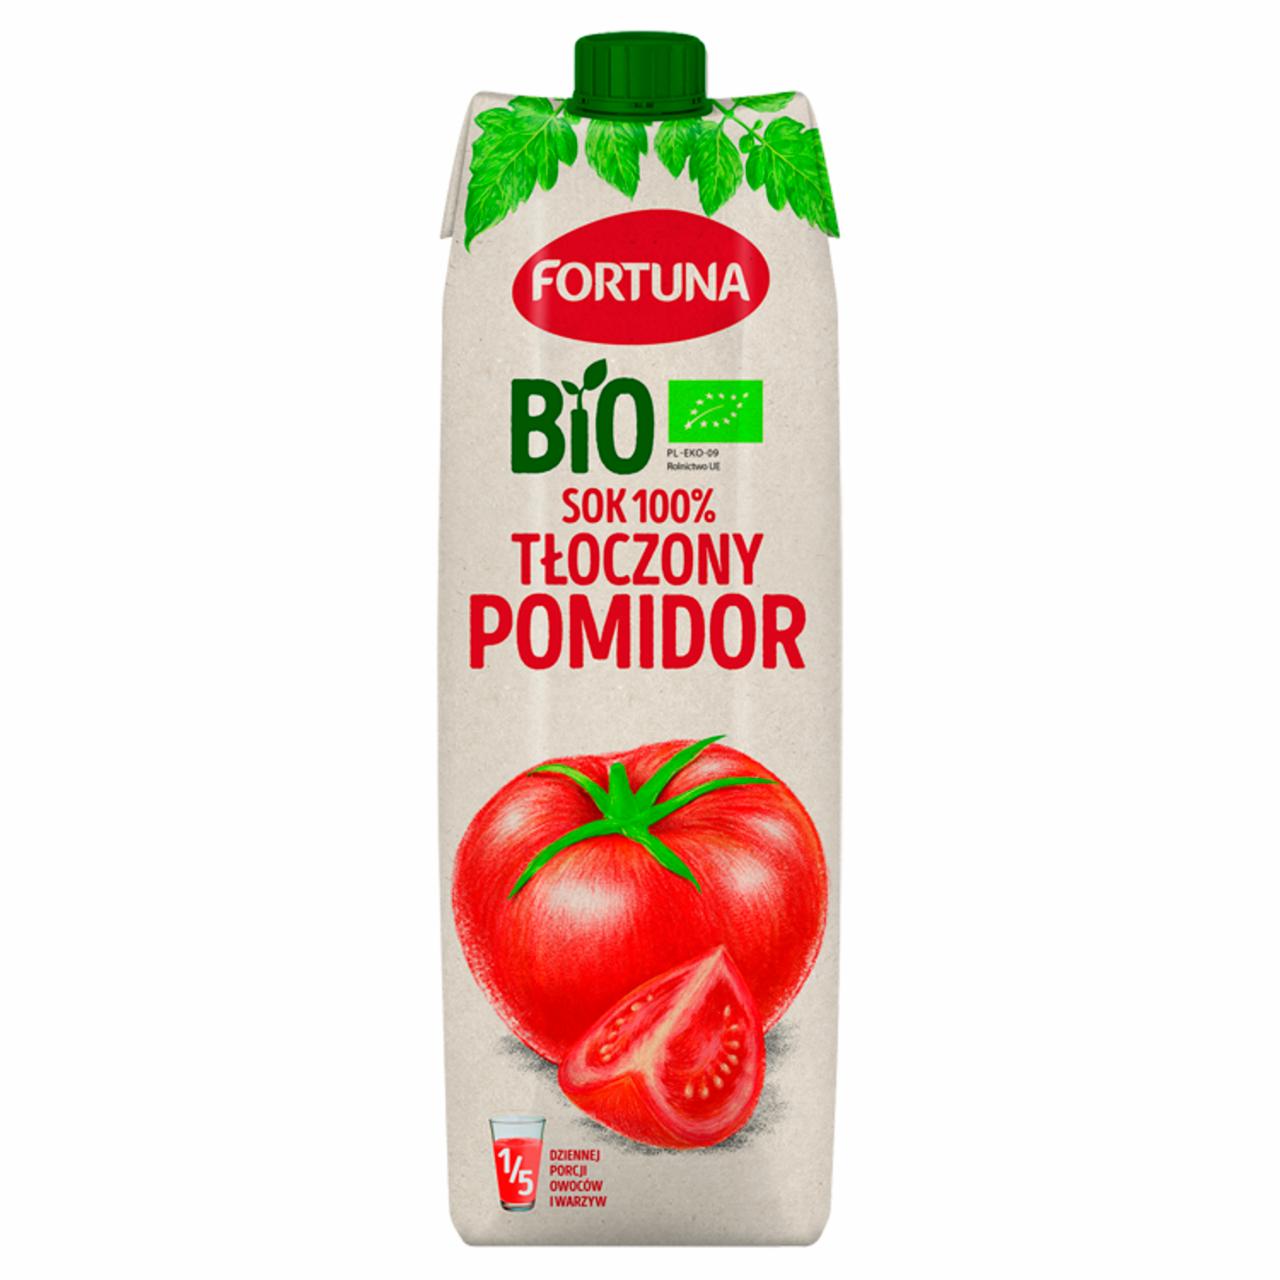 Zdjęcia - Fortuna Bio Sok 100% tłoczony pomidor 1 l